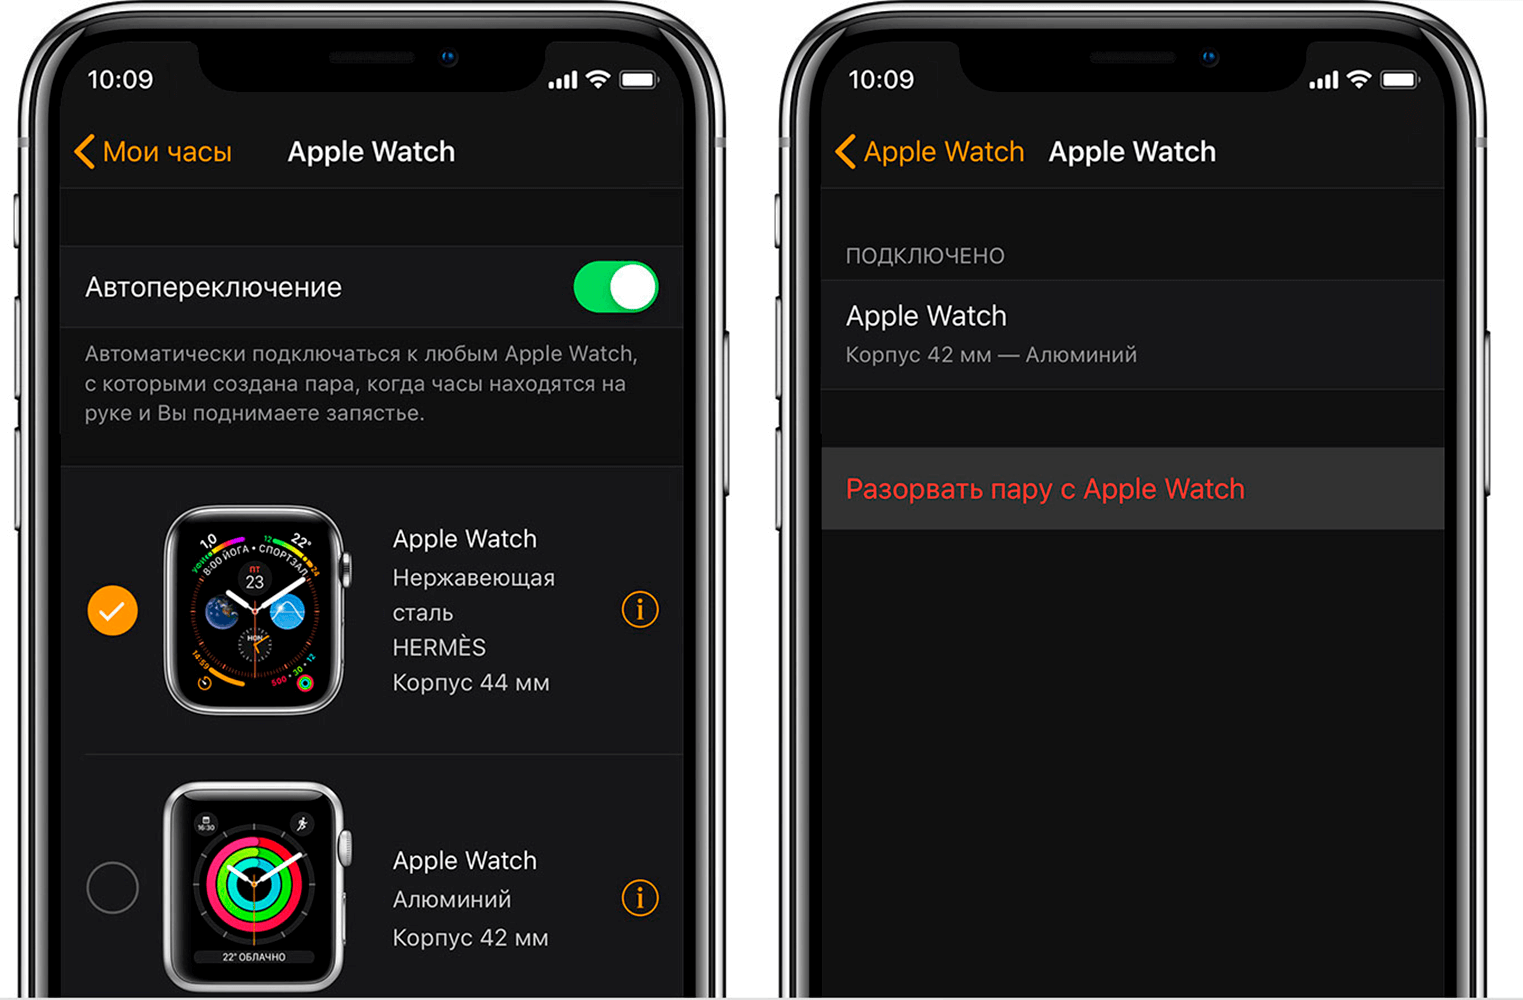 Как сбросить Apple Watch до заводских настроек с помощью iPhone. Так можно в один клик разорвать пару с Apple Watch. Фото.